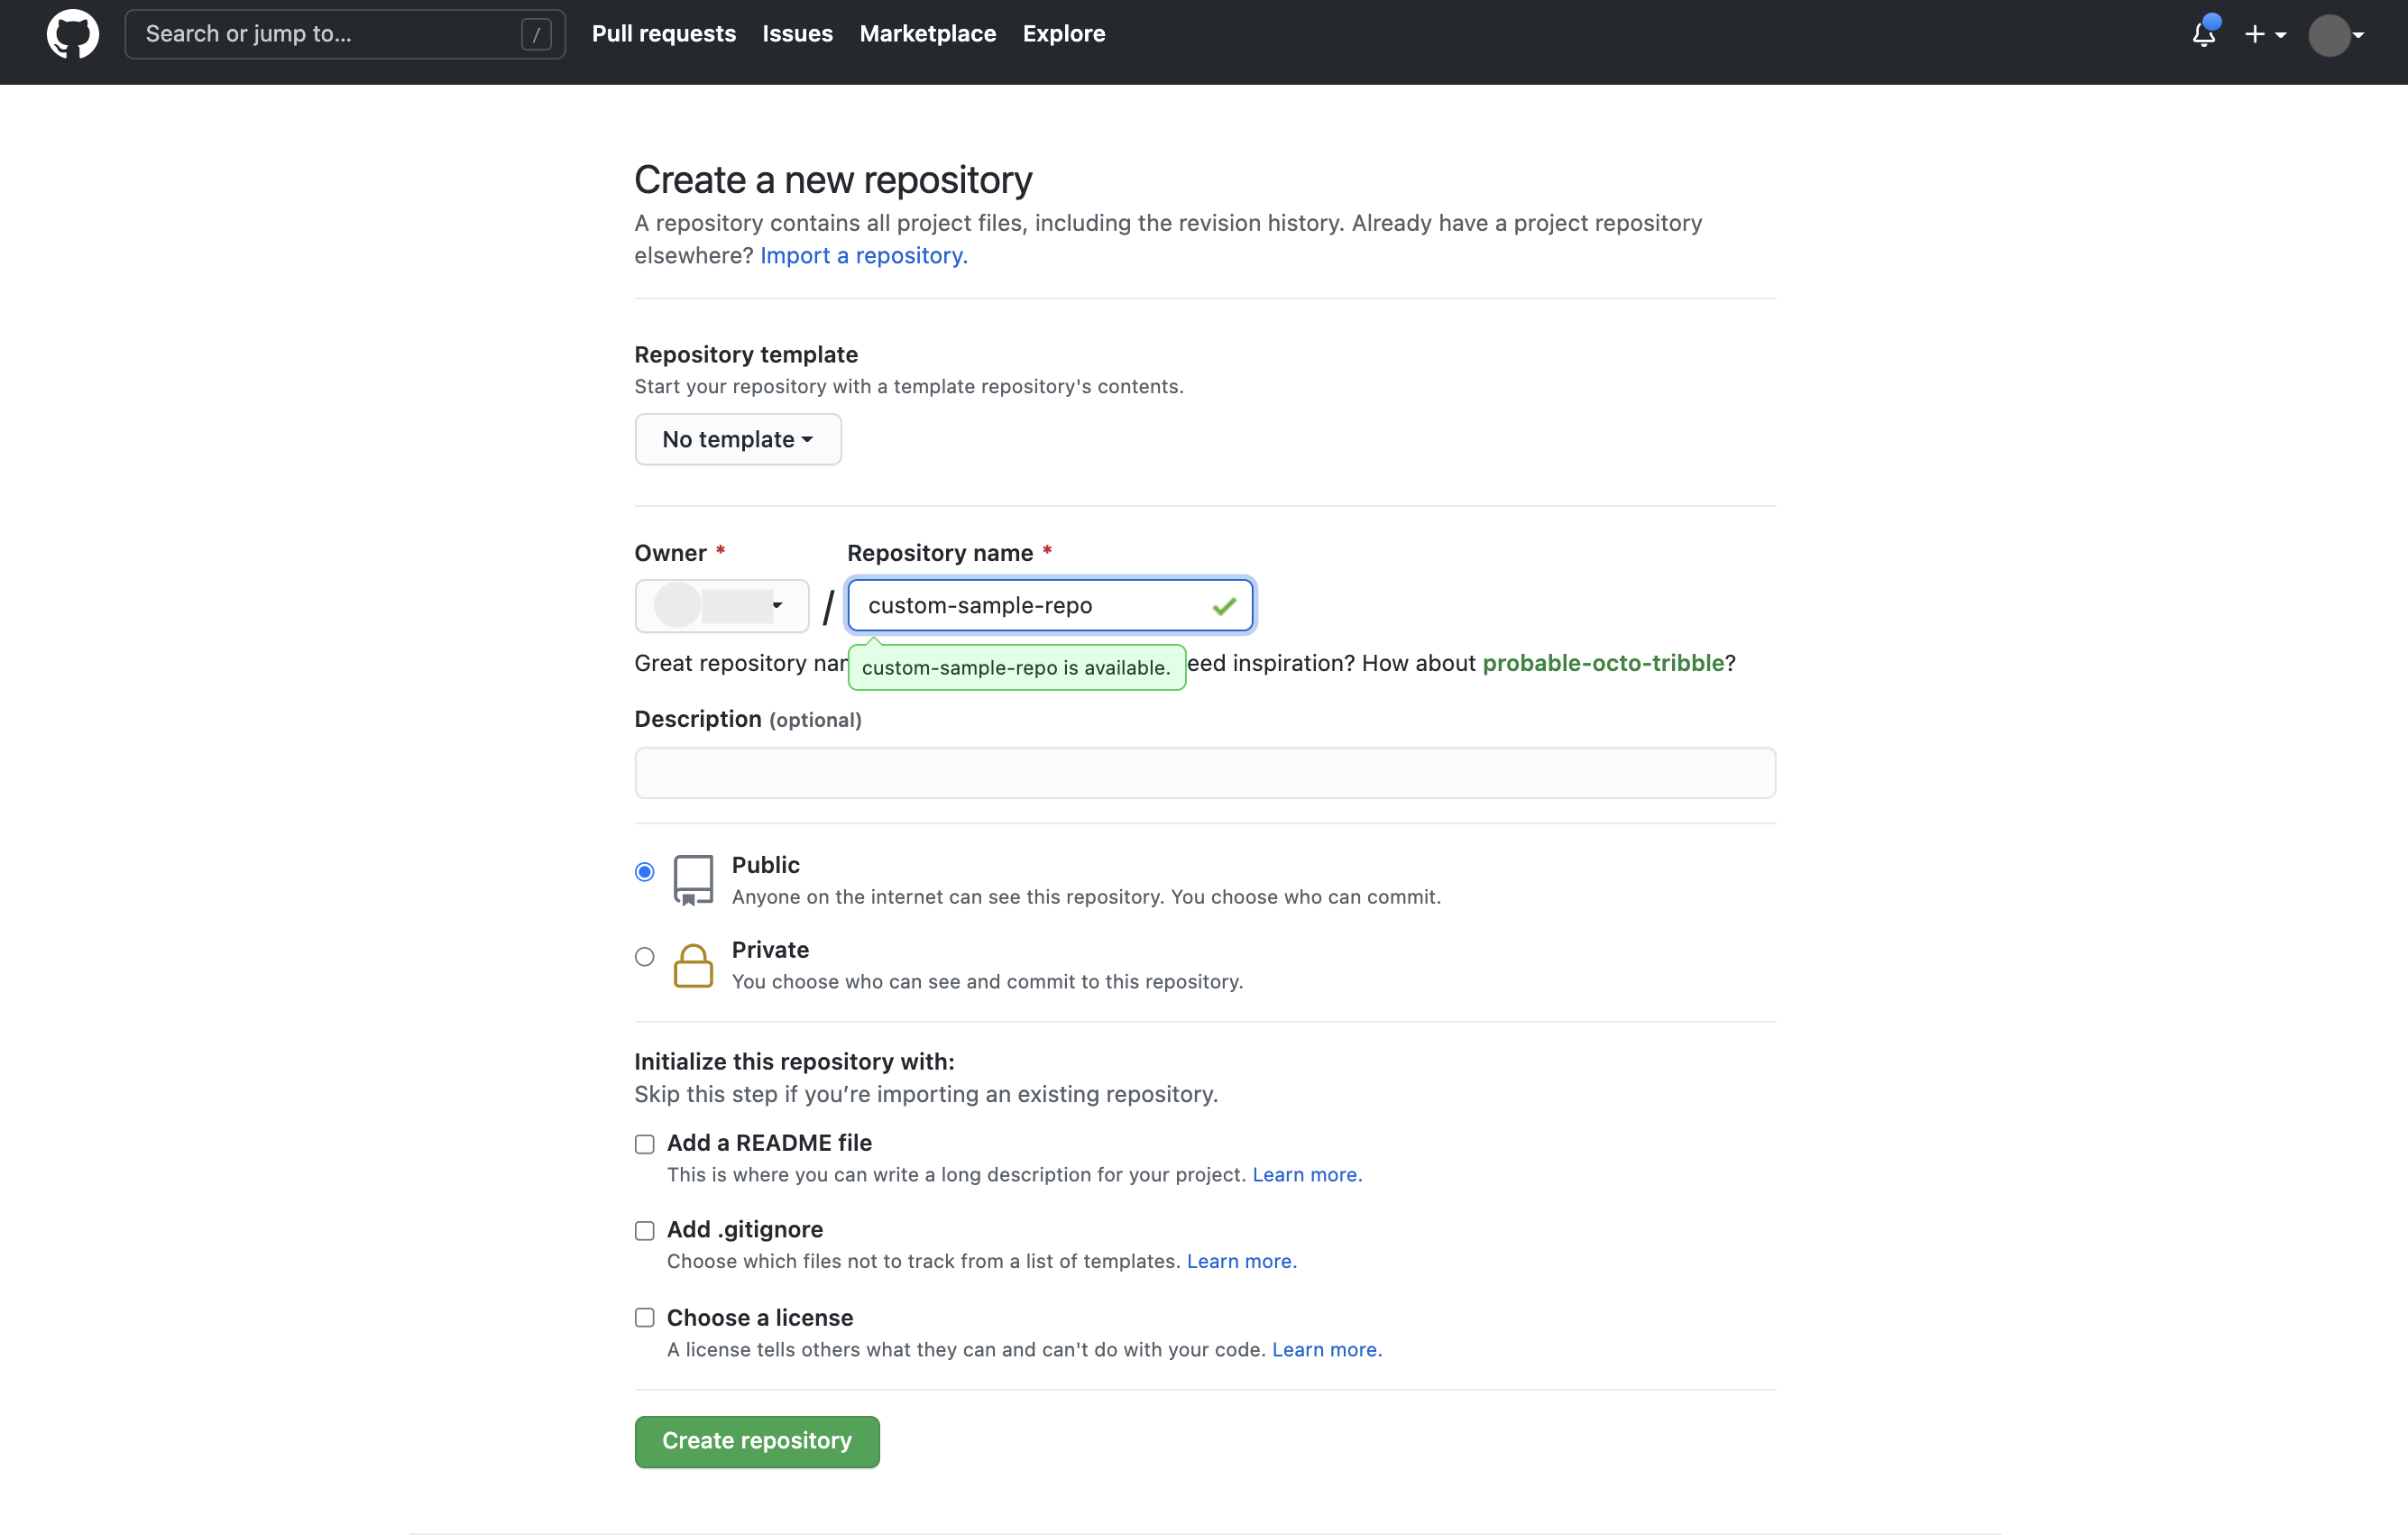 Interface de criação de repositório do GitHub com o campo de nome do repositório preenchido com "custom-sample-repo"